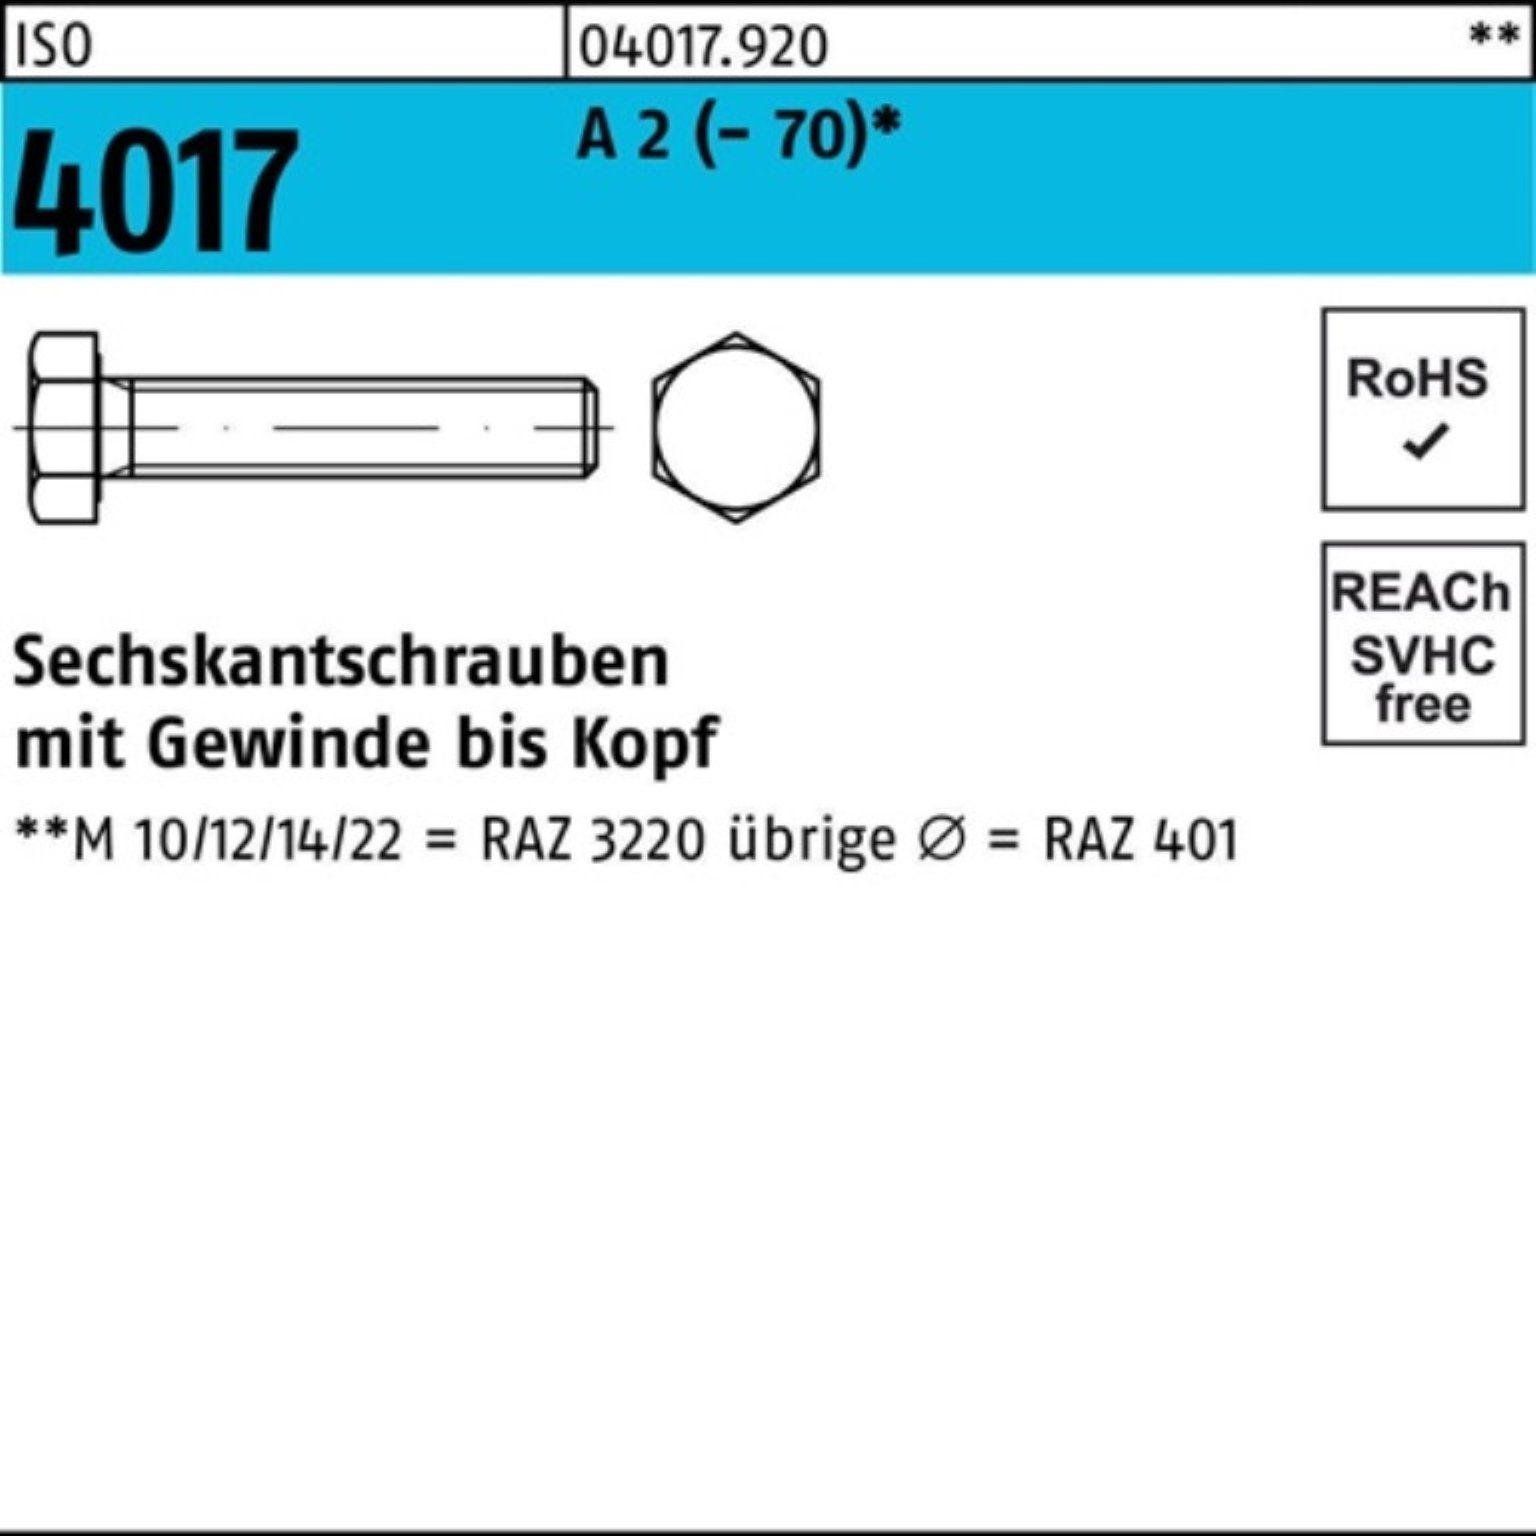 Bufab Sechskantschraube 100er Pack Sechskantschraube ISO 4017 VG M24x 140 A 2 (70) 1 Stück